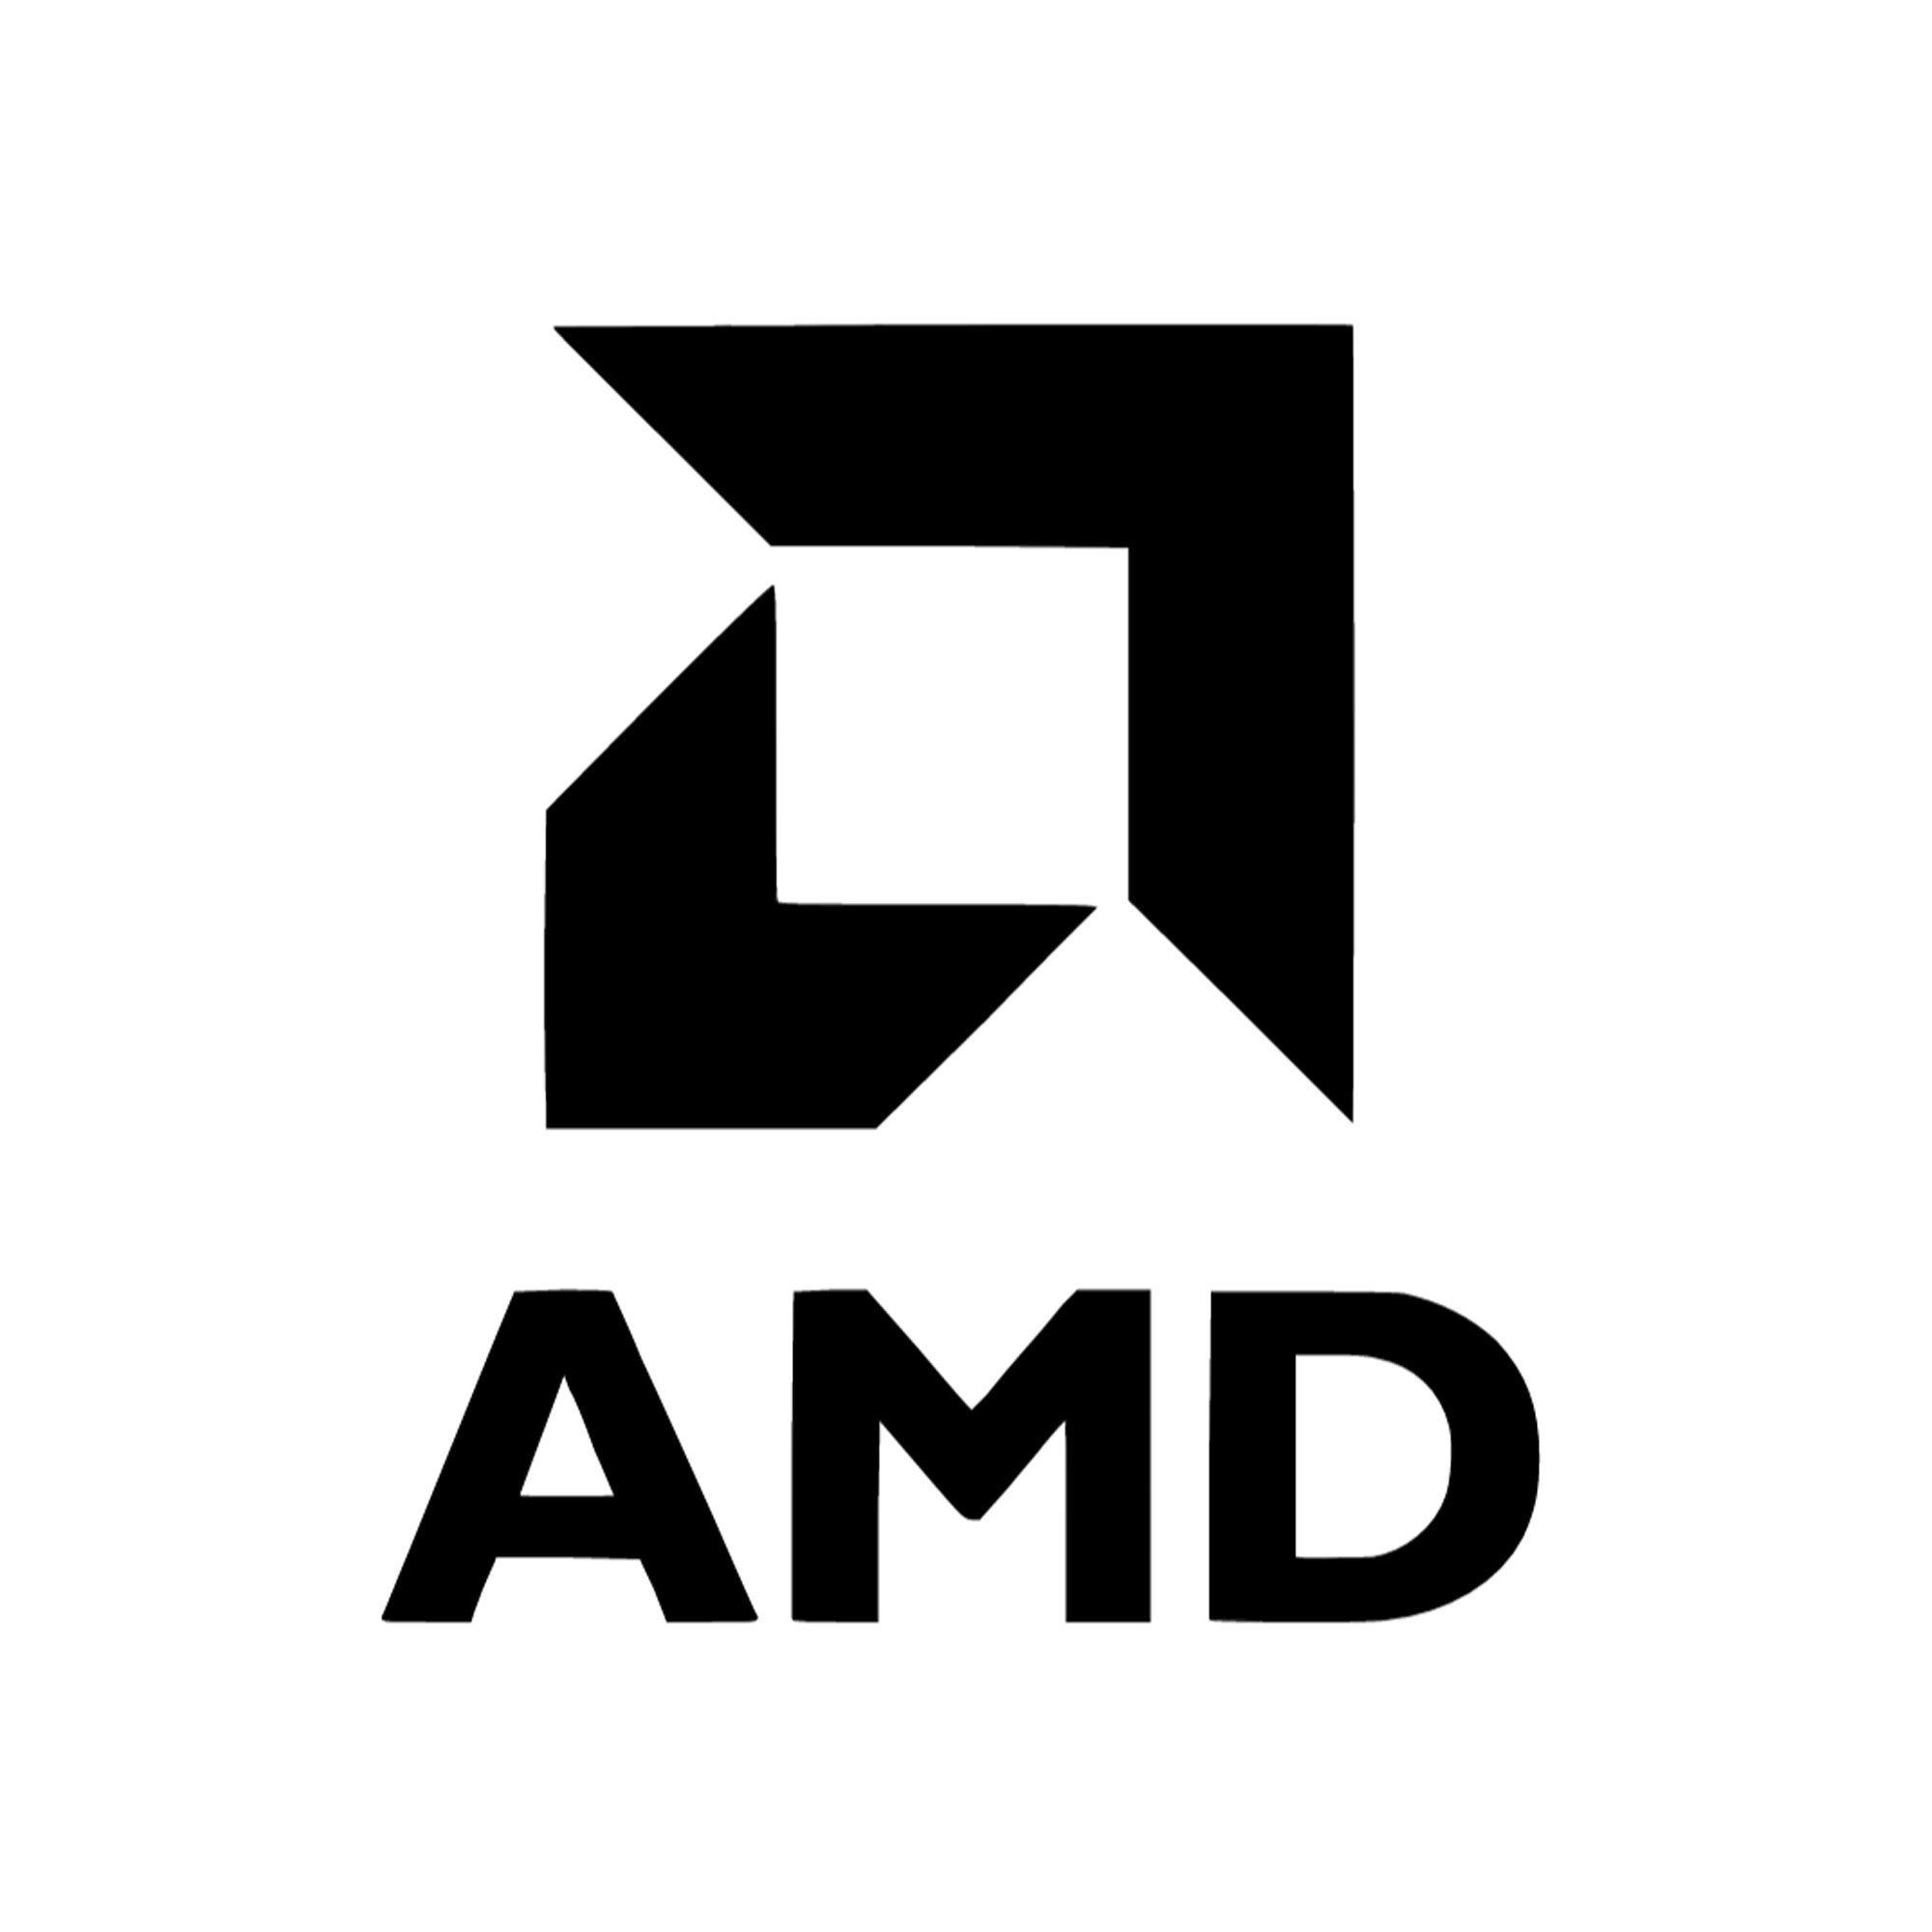 AMD développe sa collaboration avec Google Cloud